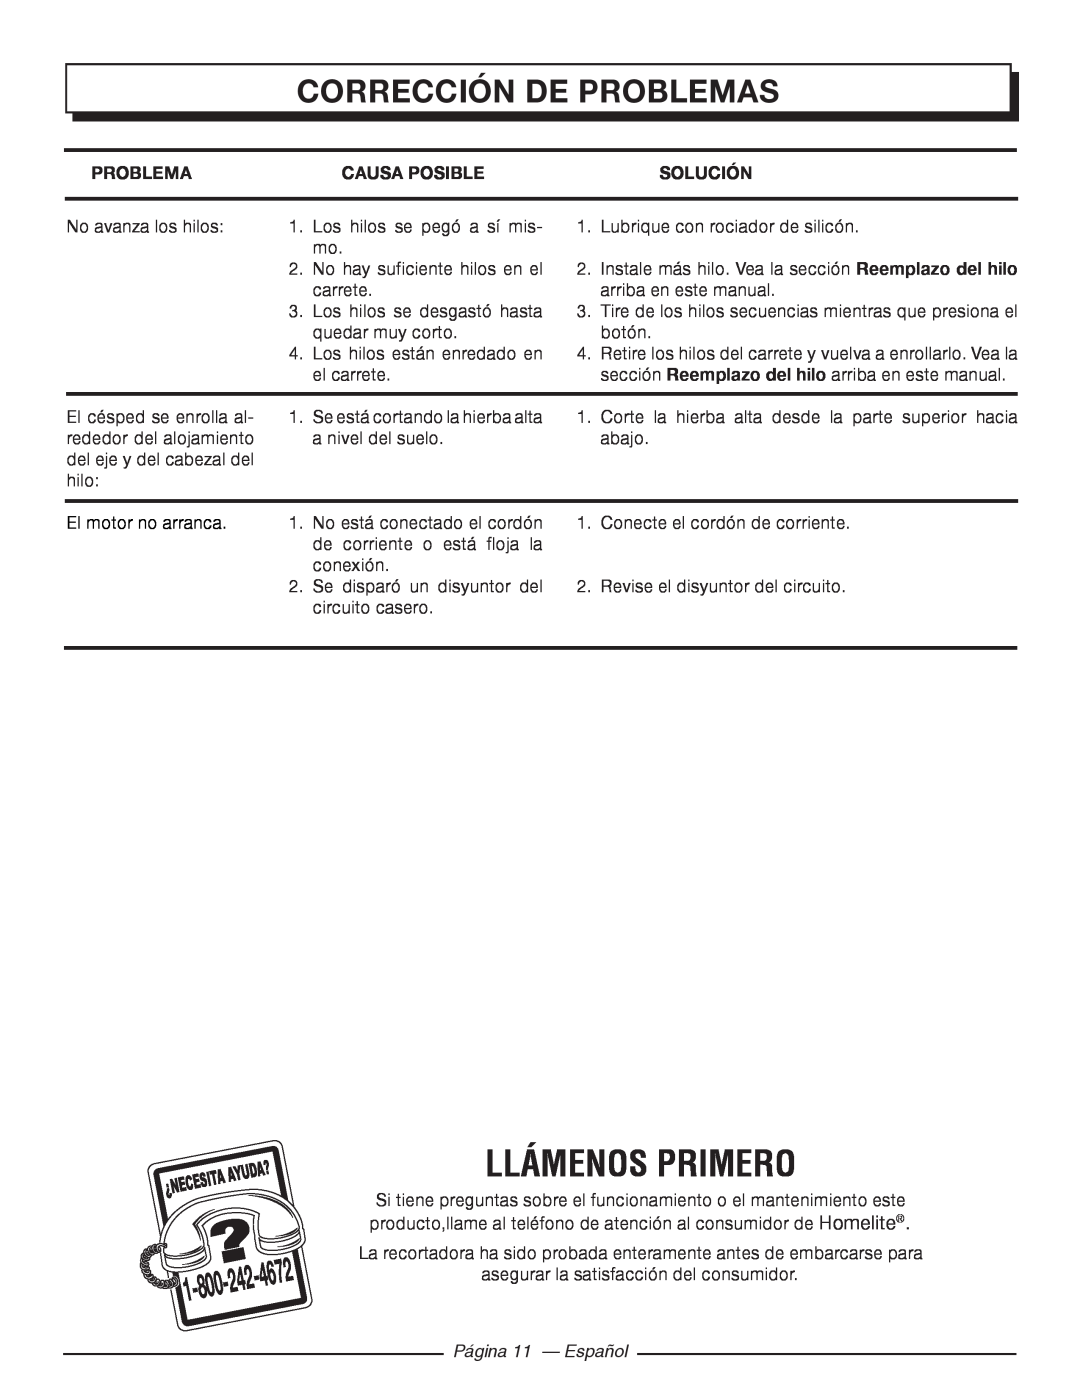 Homelite UT41112 Llámenos Primero, Corrección De Problemas, Causa Posible, Solución, 4672, Página 11 - Español 